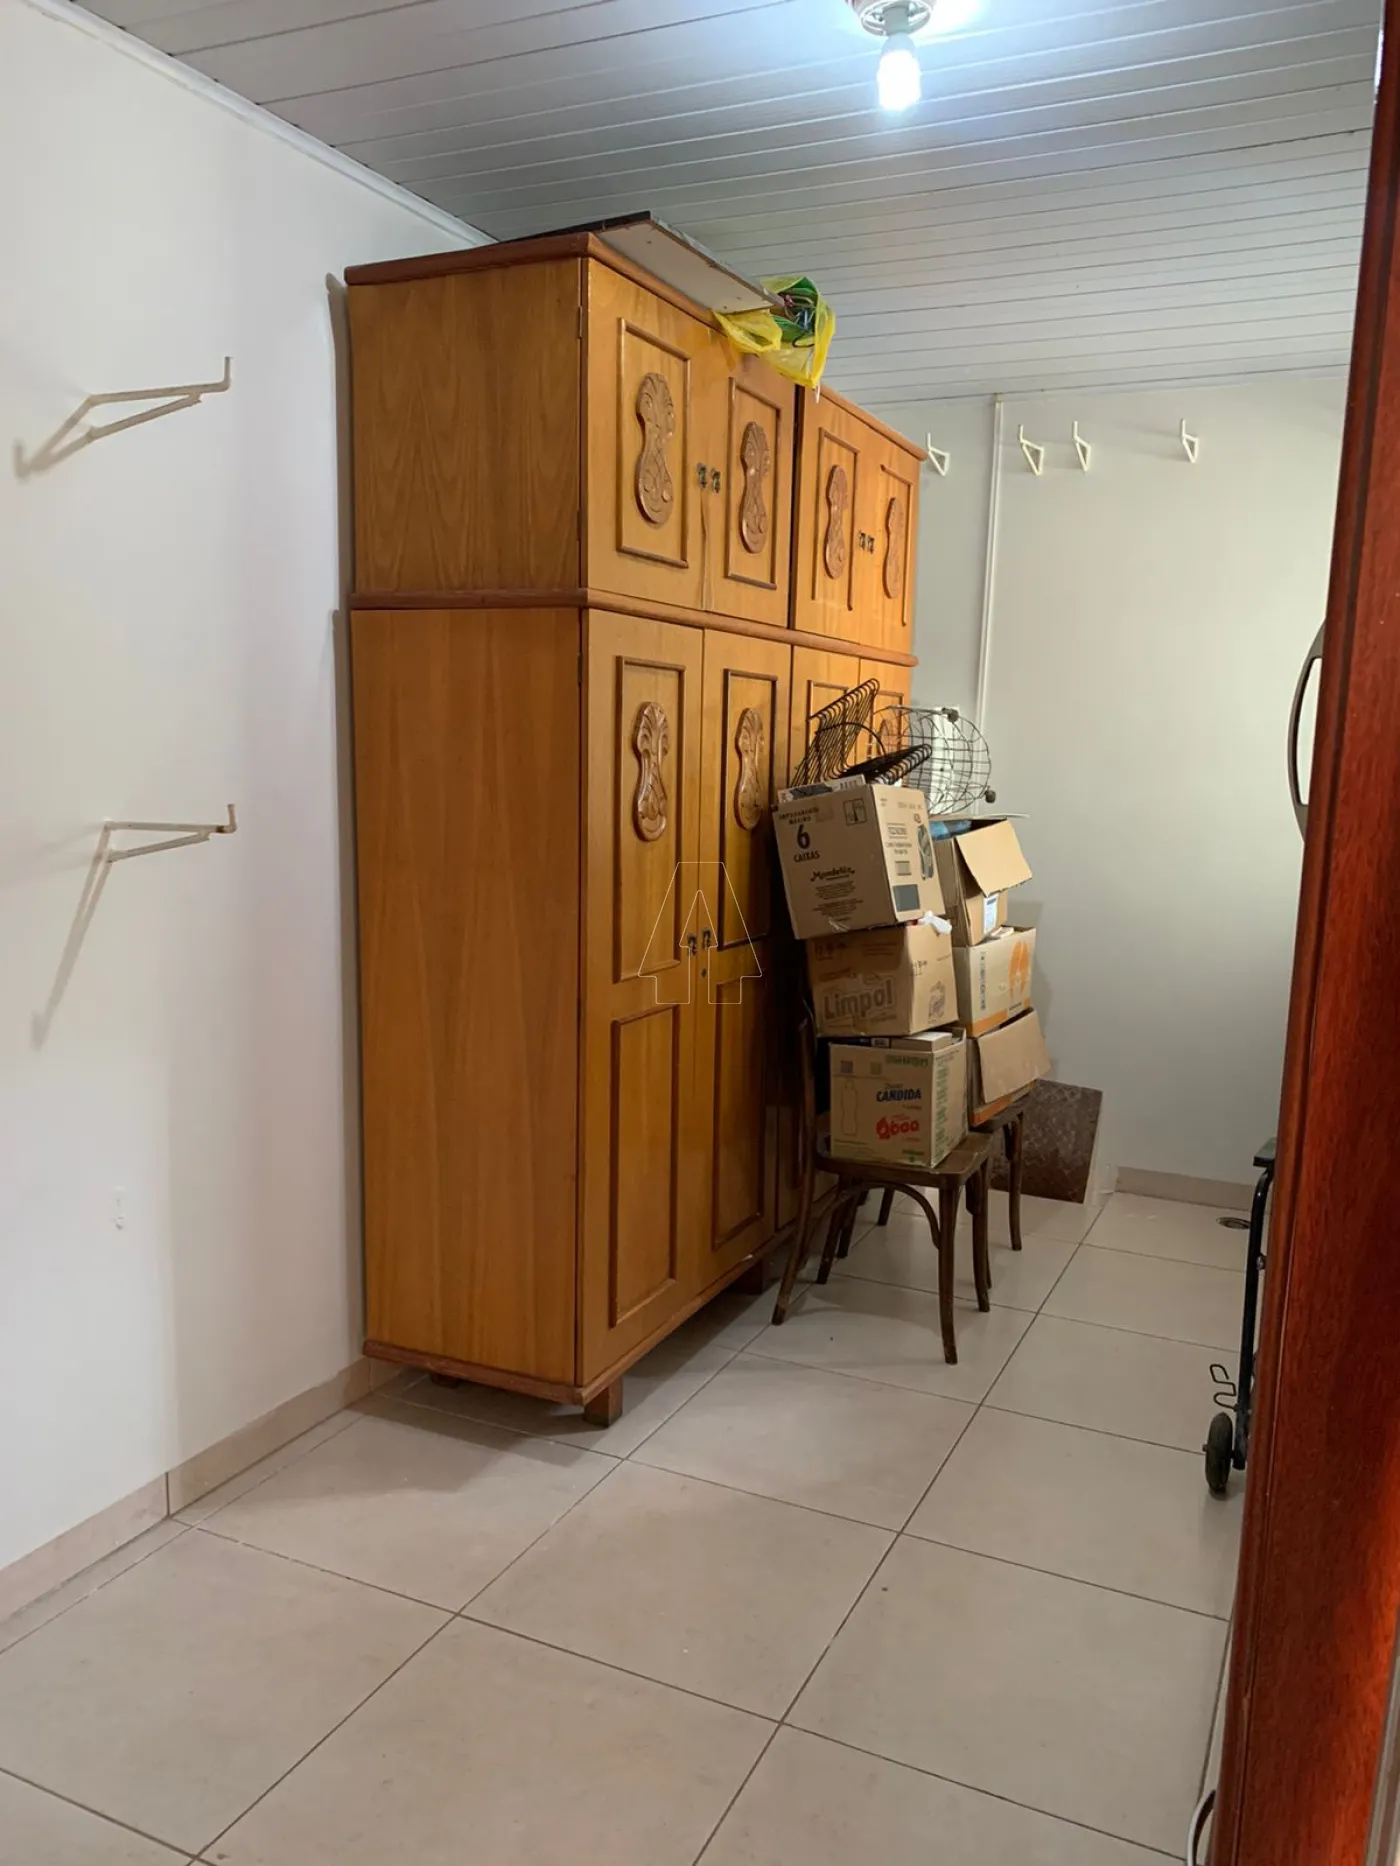 Comprar Casa / Residencial em Araçatuba R$ 600.000,00 - Foto 5